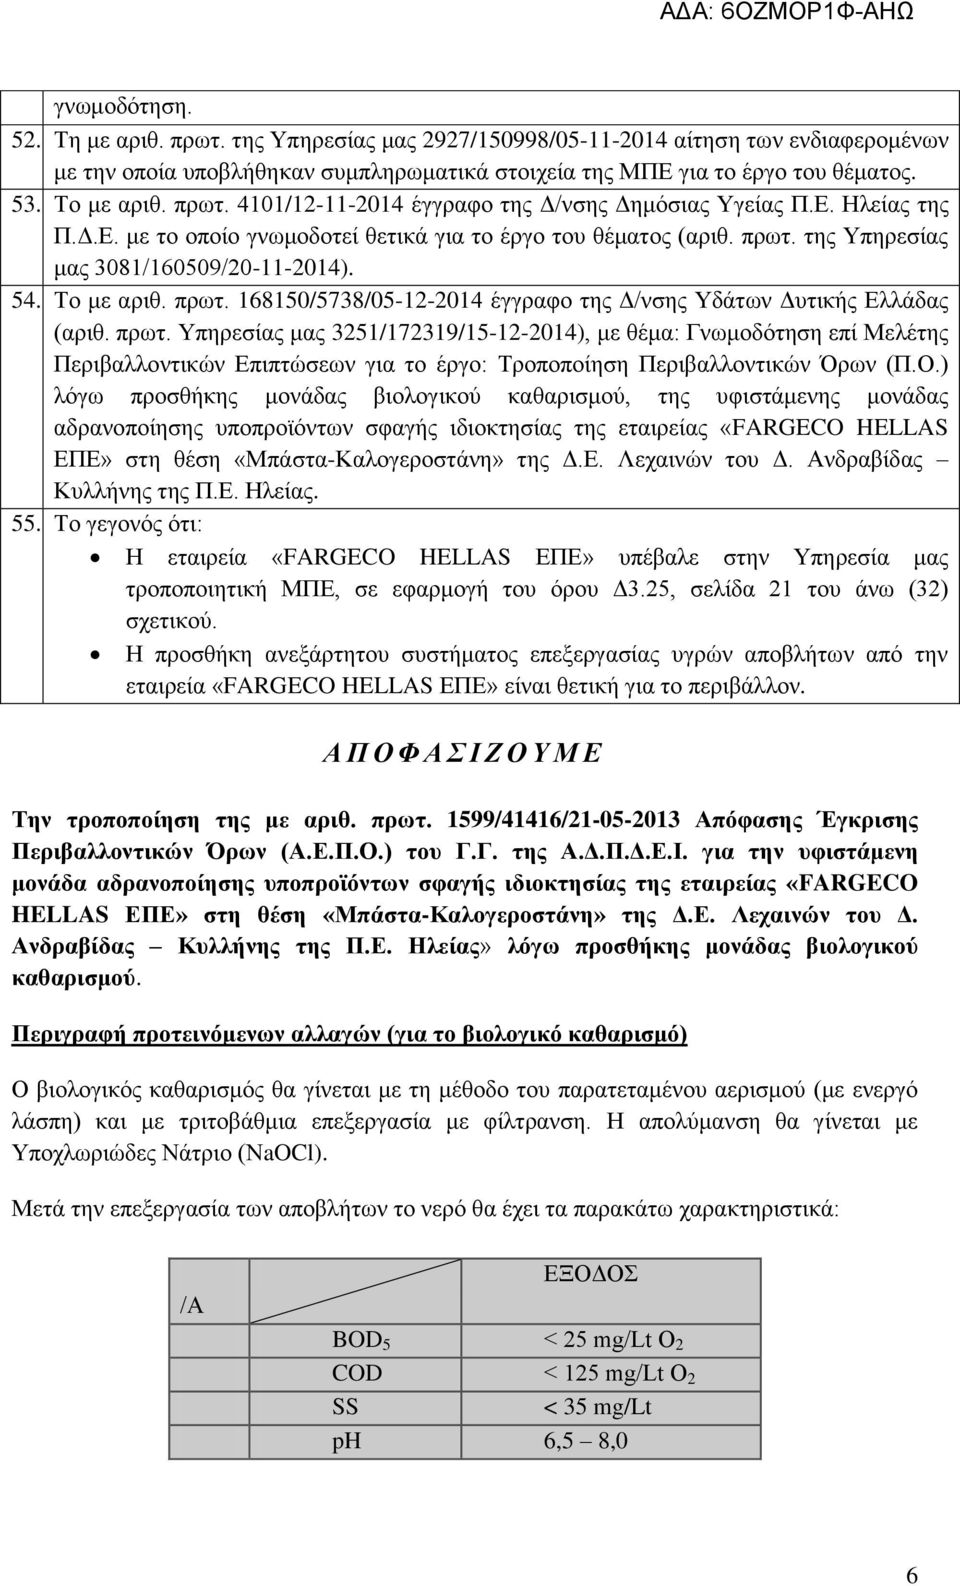 Το με αριθ. πρωτ. 168150/5738/05-12-2014 έγγραφο της Δ/νσης Υδάτων Δυτικής Ελλάδας (αριθ. πρωτ. Υπηρεσίας μας 3251/172319/15-12-2014), με θέμα: Γνωμοδότηση επί Μελέτης Περιβαλλοντικών Επιπτώσεων για το έργο: Τροποποίηση Περιβαλλοντικών Όρων (Π.